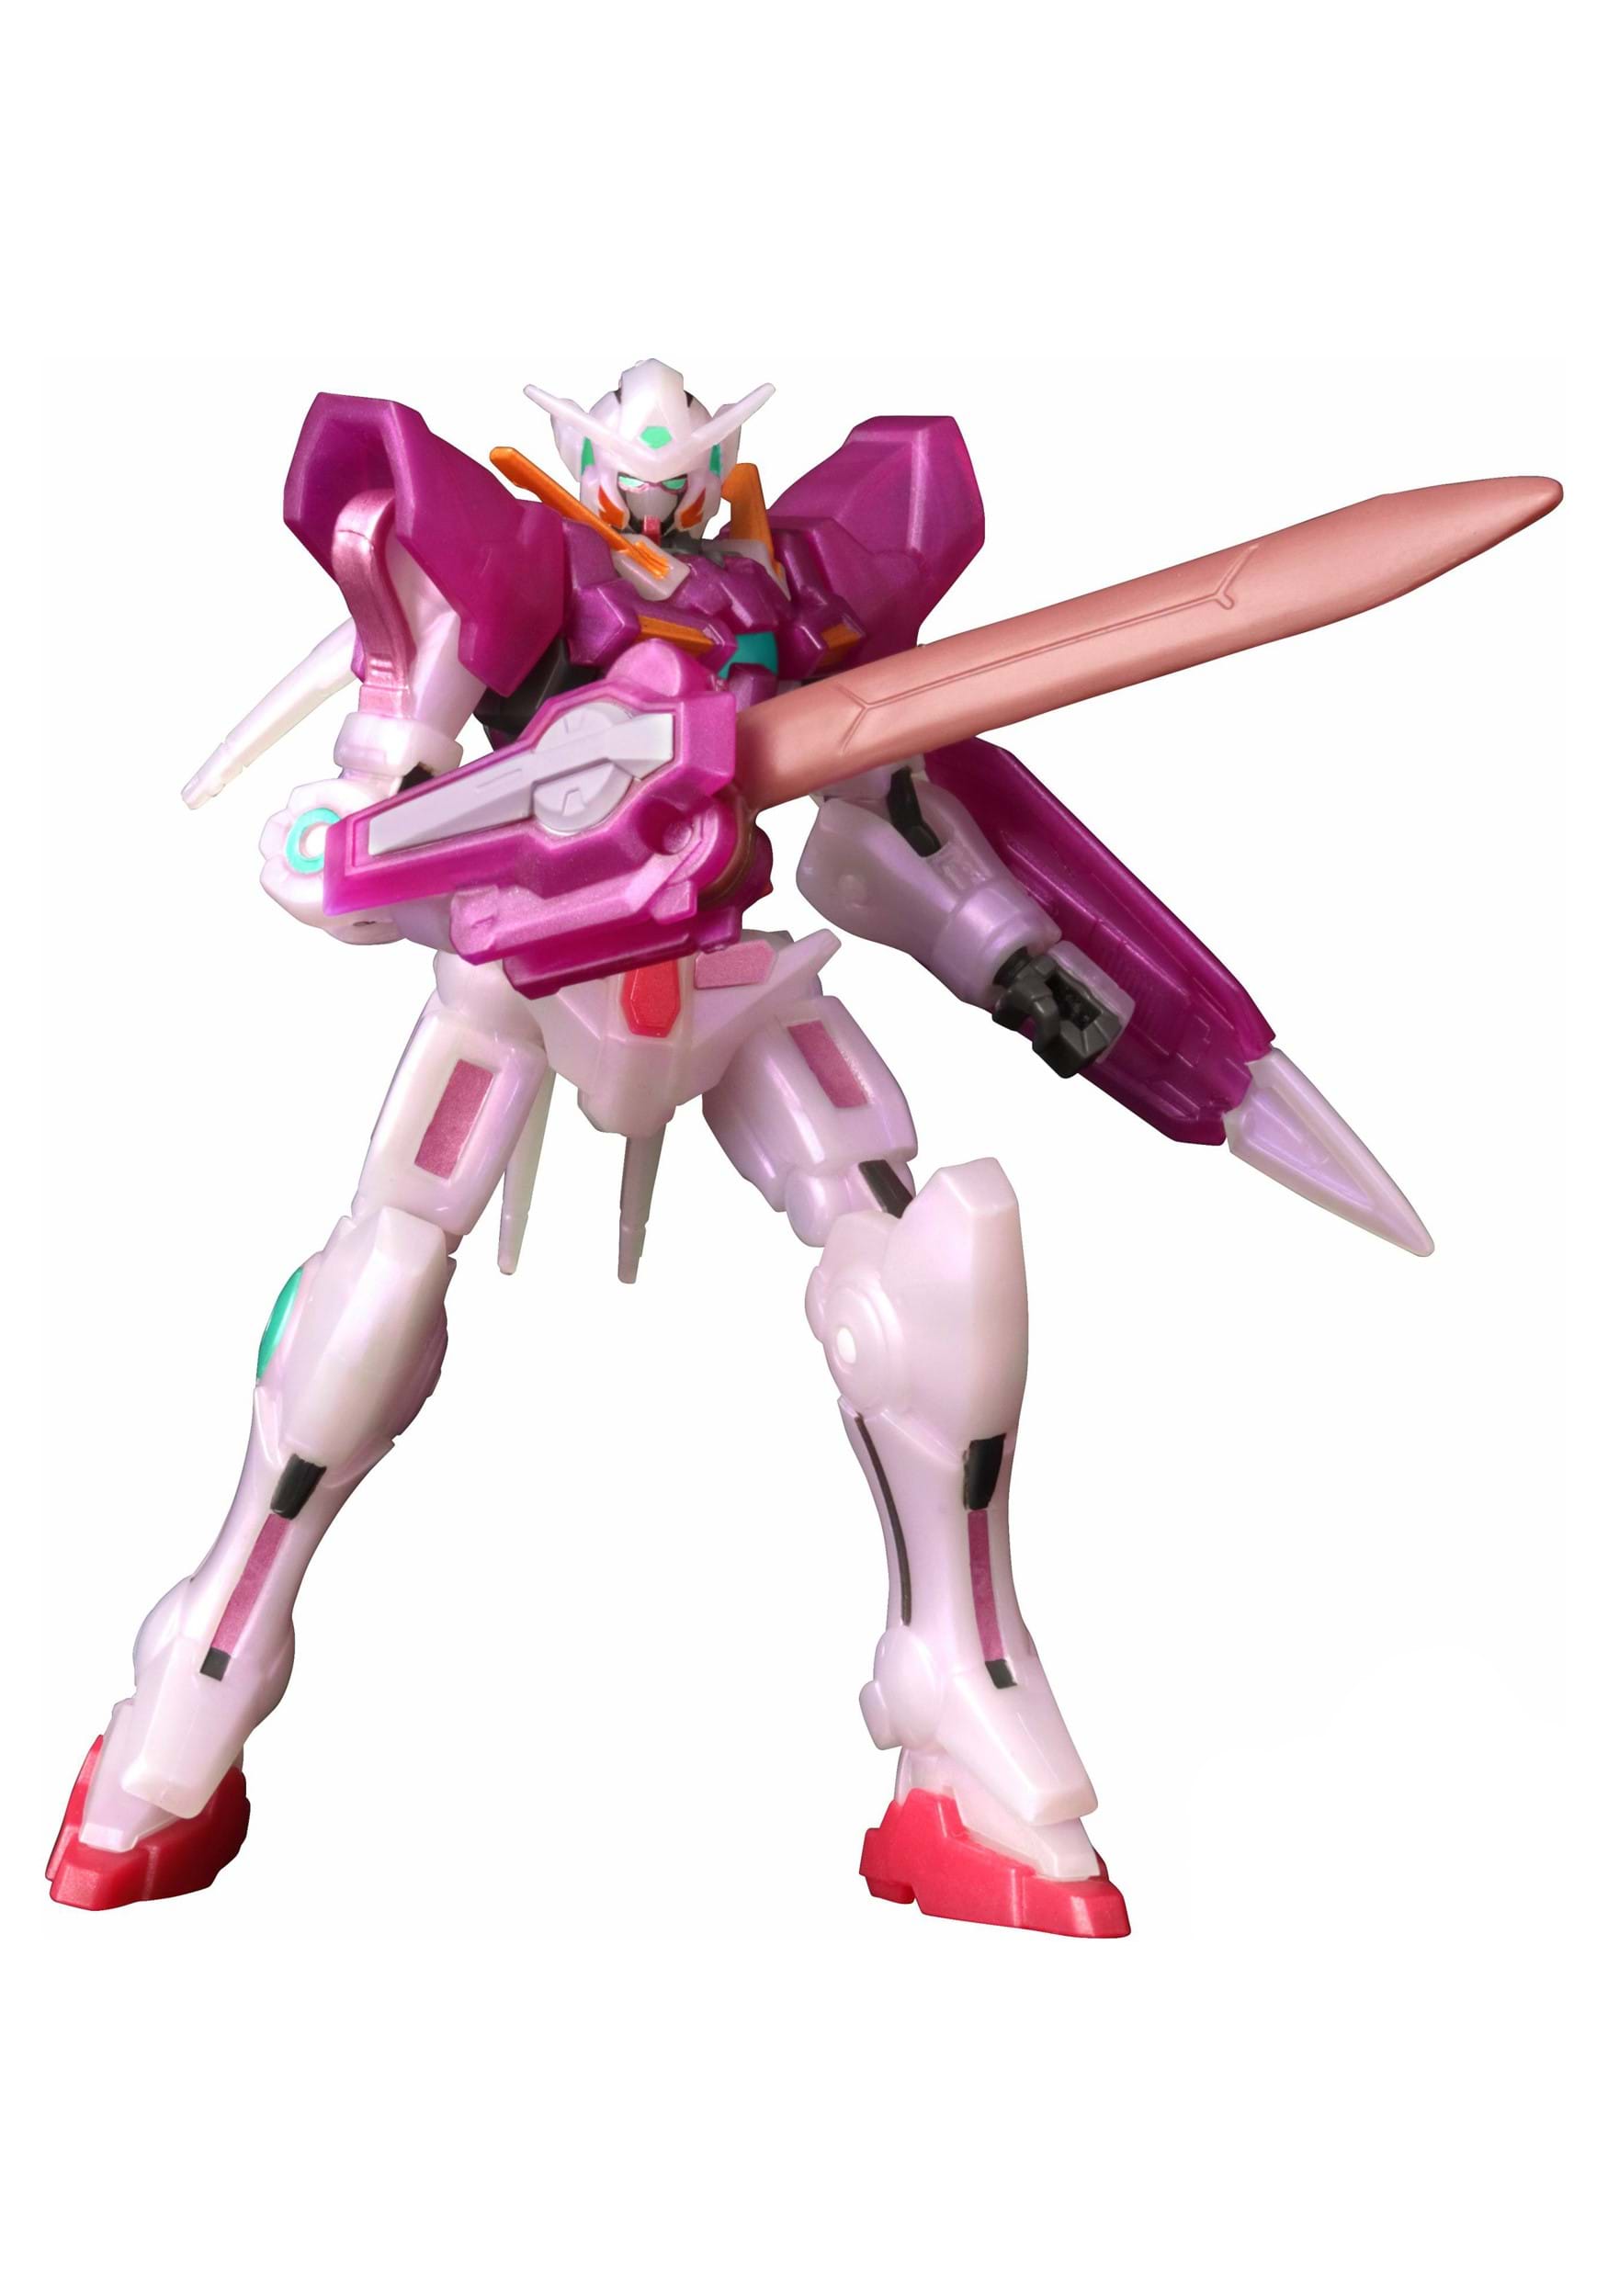 SDCC 2022 Gundam Infinity Gundam toy Exia Trans-am MOD